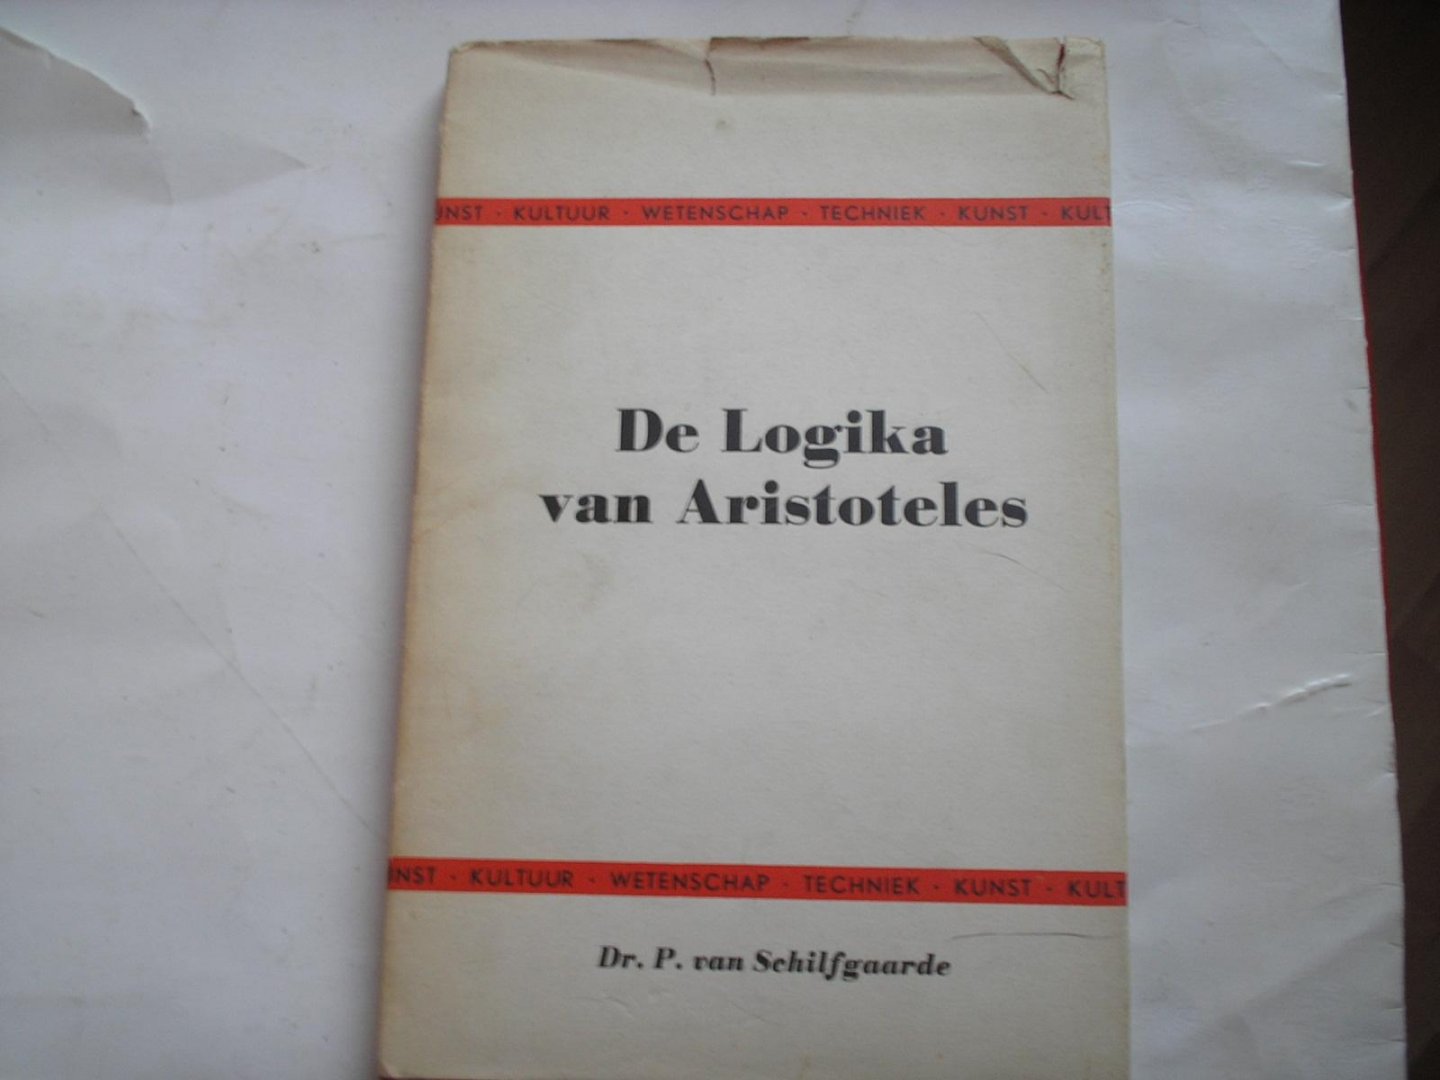 Schilfgaarde van, Dr. P. - De Logika van Aristoles